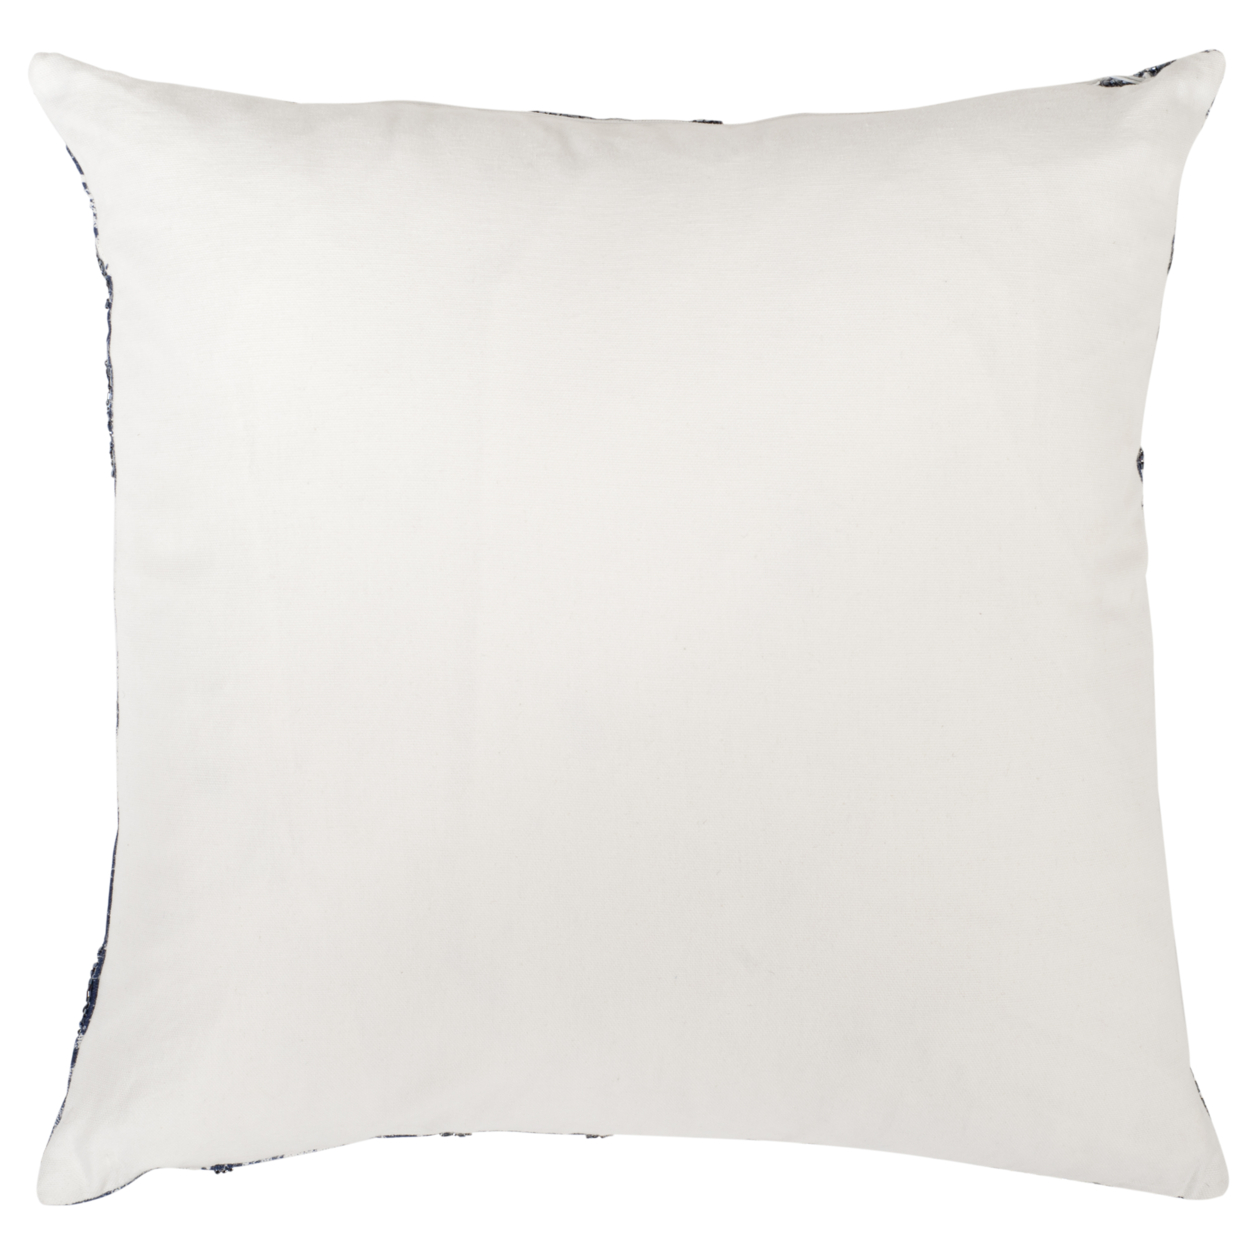 SAFAVIEH Delra Pillow Navy / White